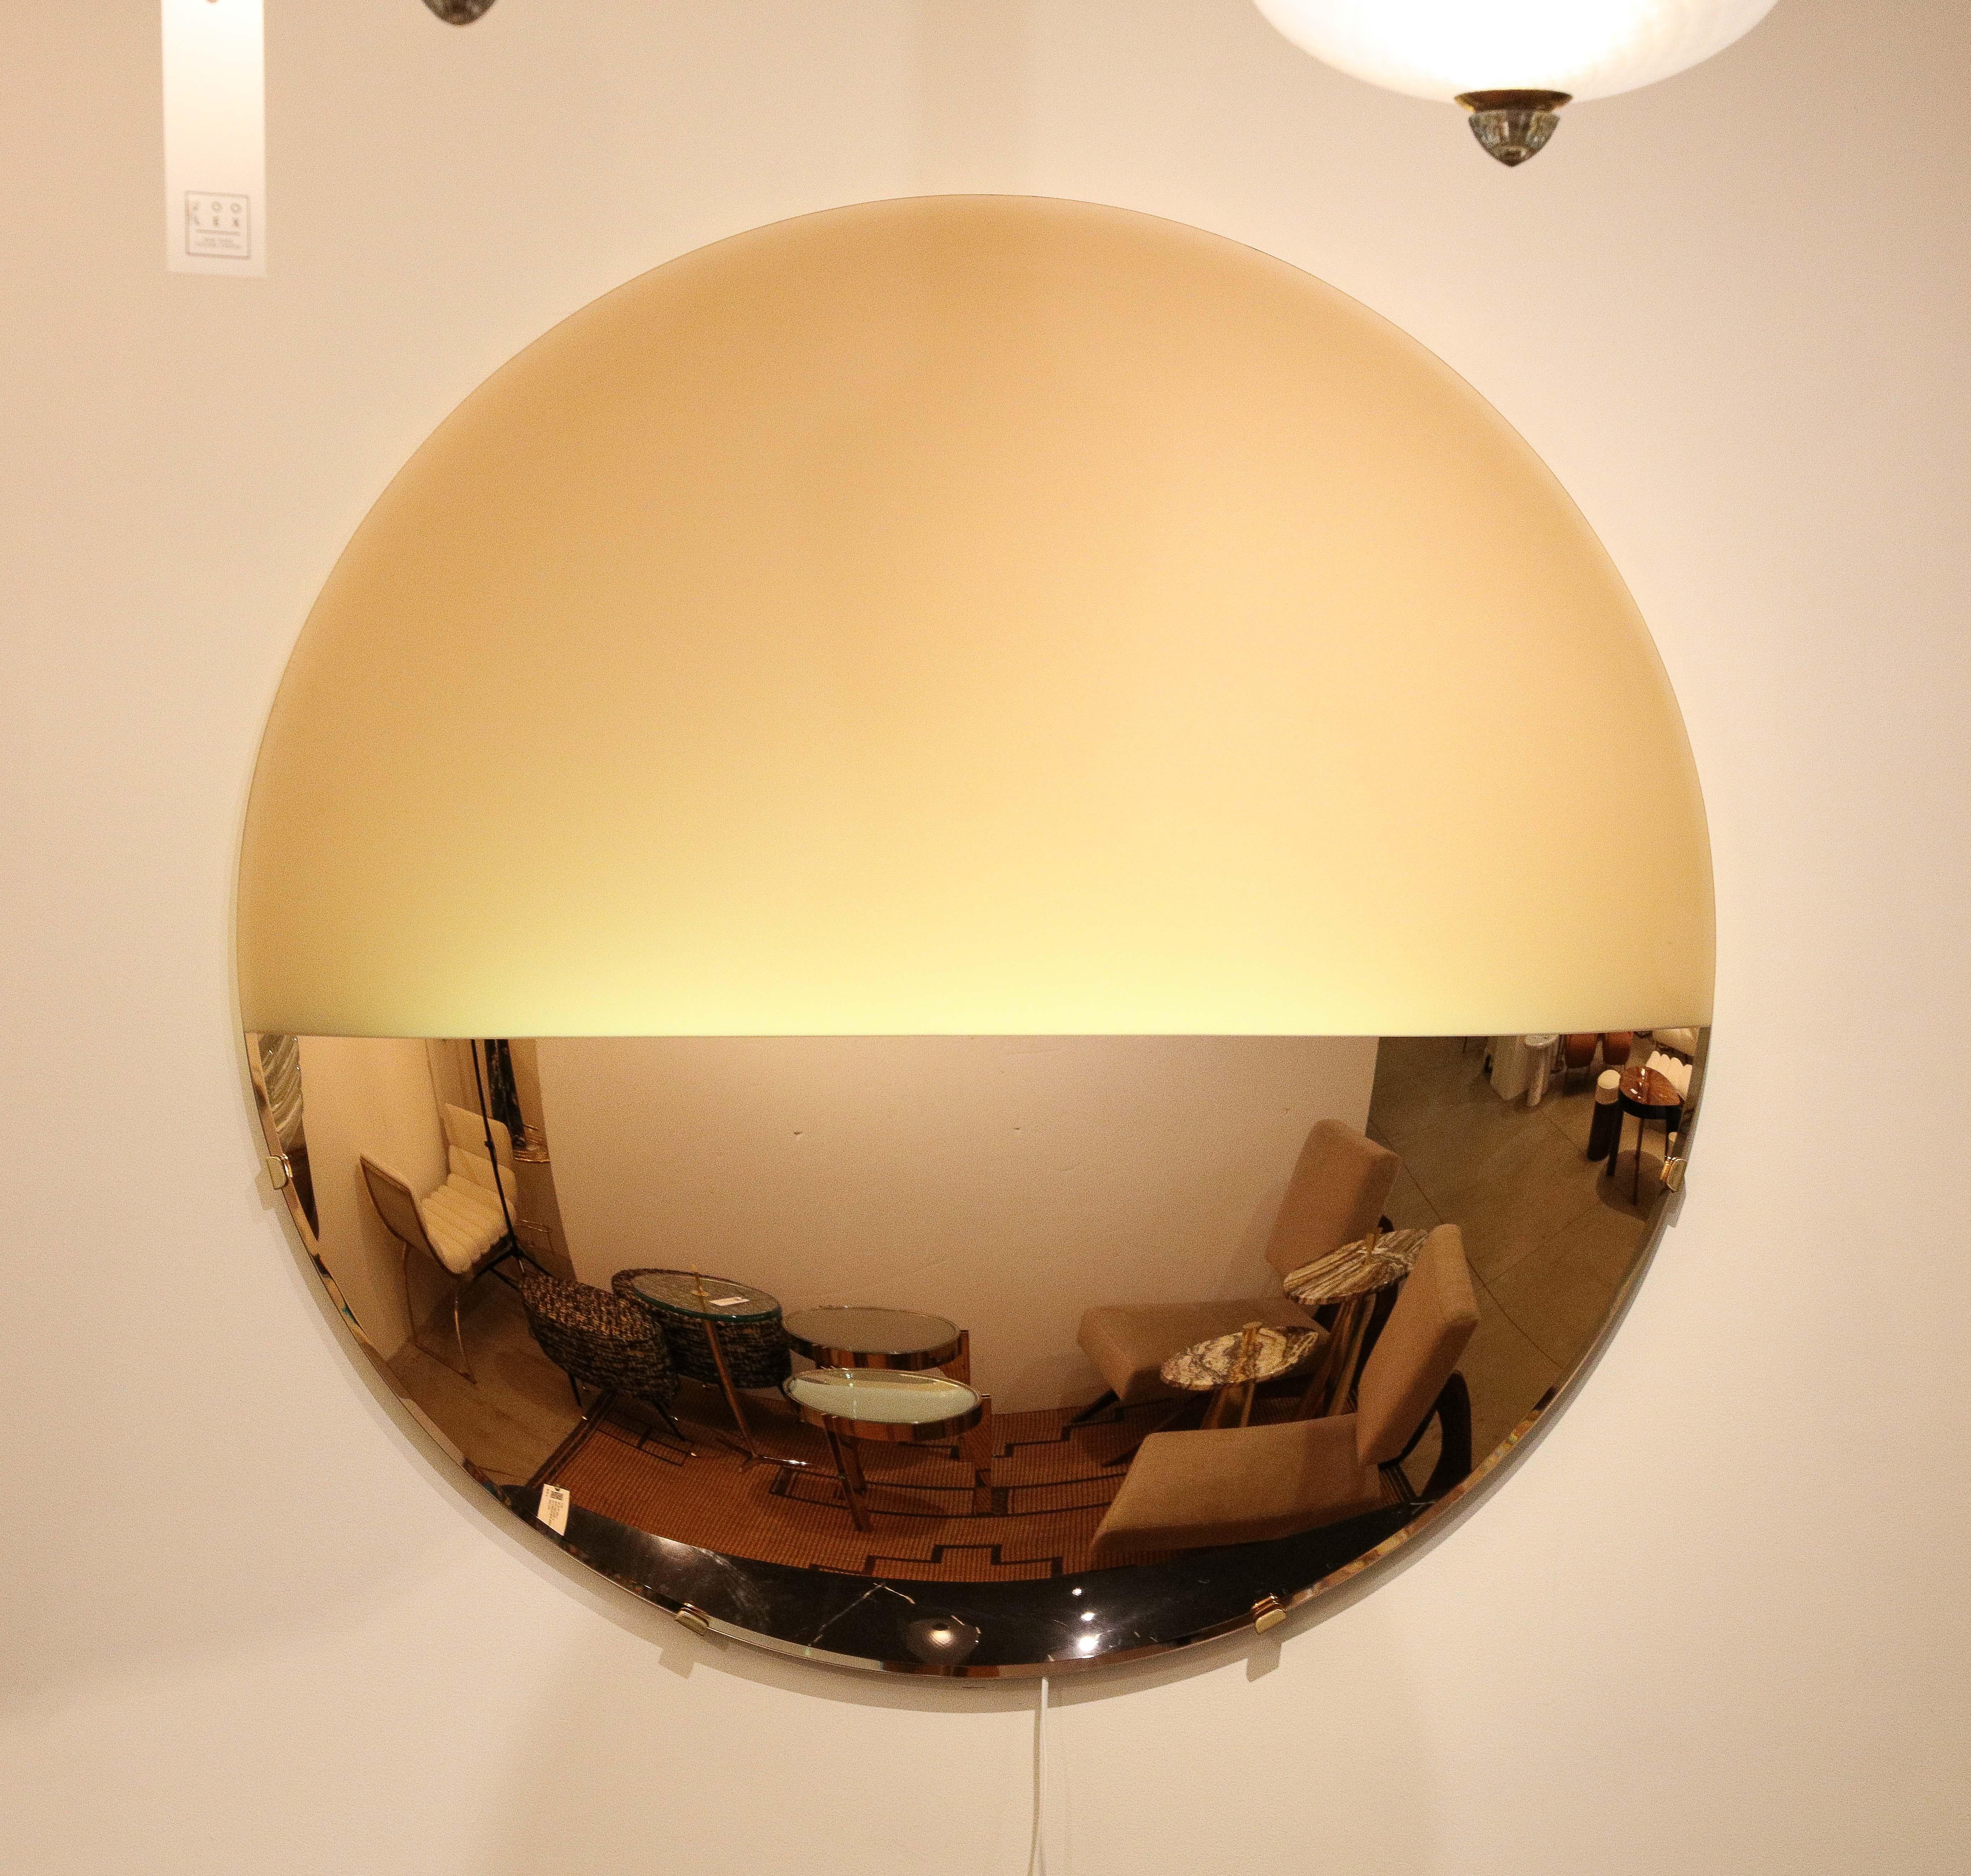 Dieser große, skulpturale, runde, konvexe, roségoldene, beleuchtete Spiegel oder Wandkunst ist ein einzigartiges Kunstwerk.  Ein großes, rundes Glas wird zunächst durch Thermoformen in eine skulpturale, konvexe Form gebracht (d. h. die runde